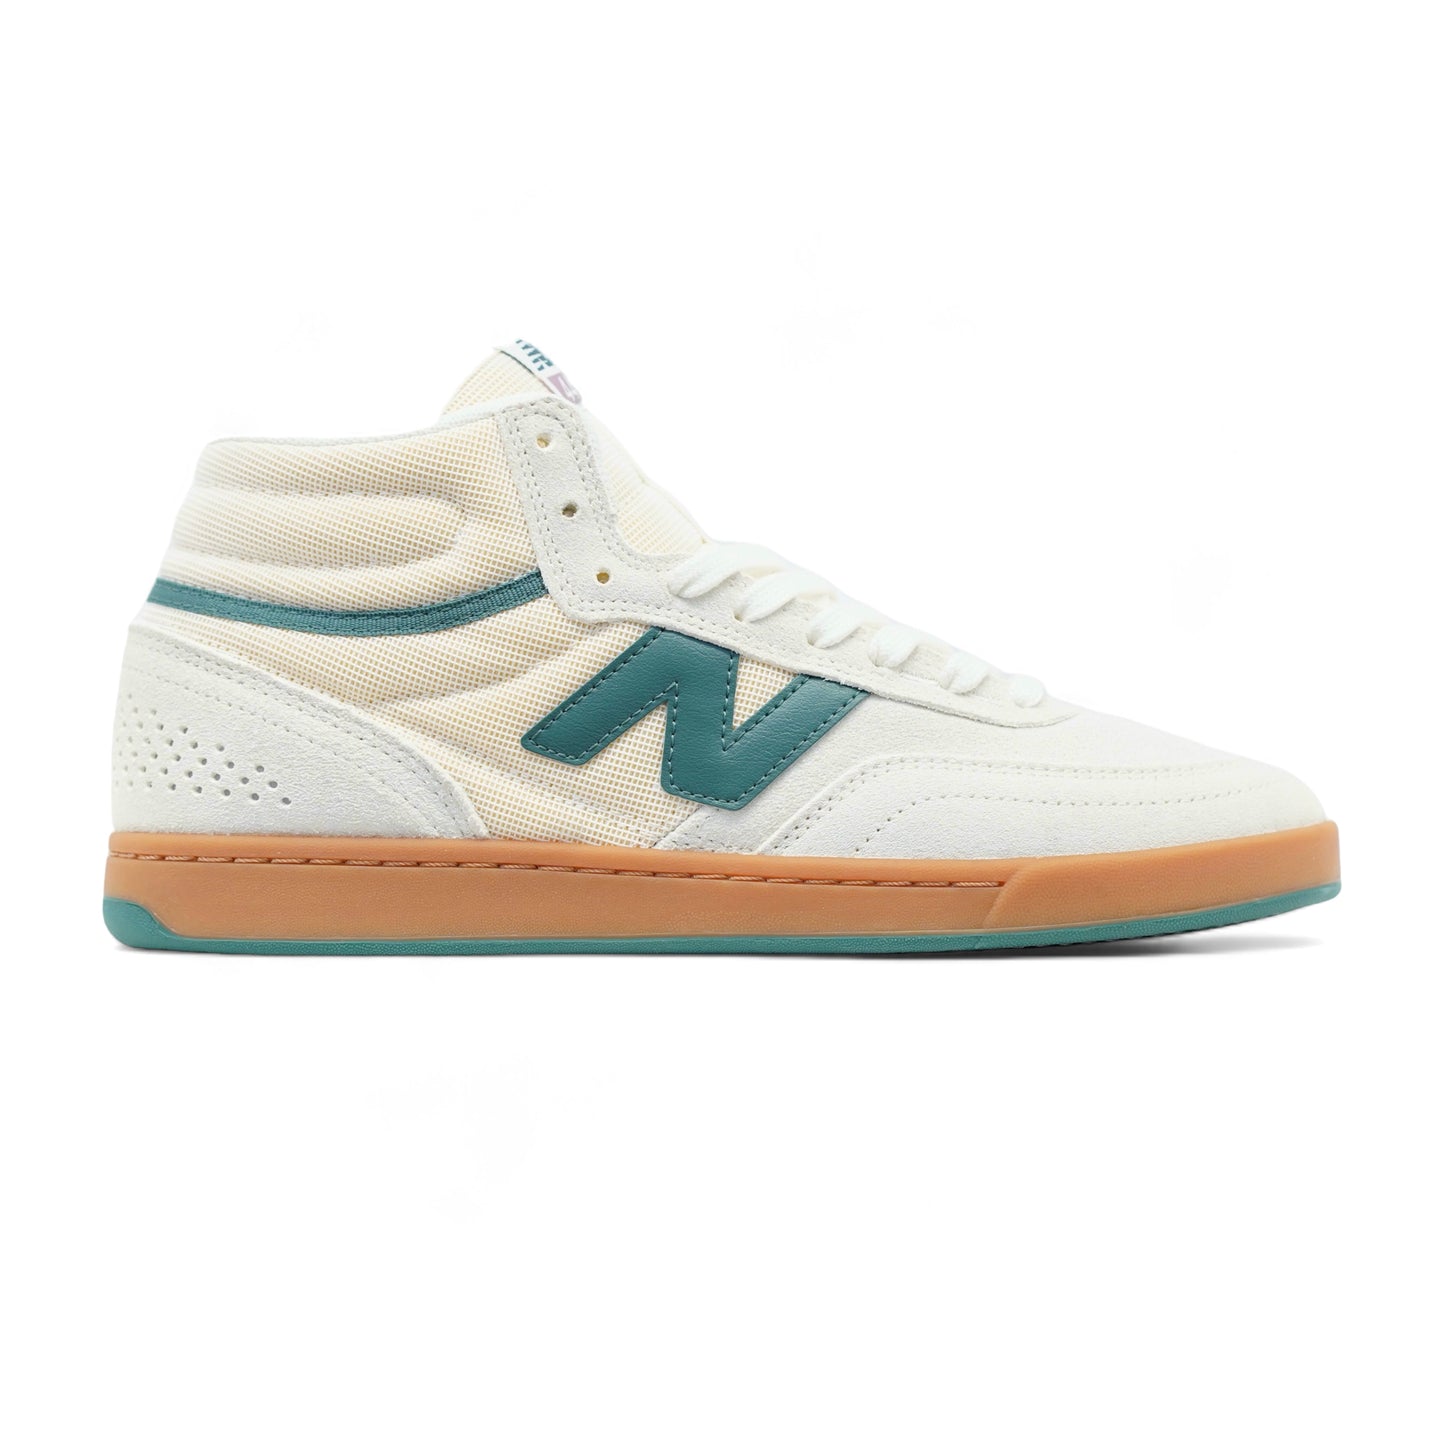 New Balance Numeric - 440 V2 High Shoes - Sea Salt/New Spruce